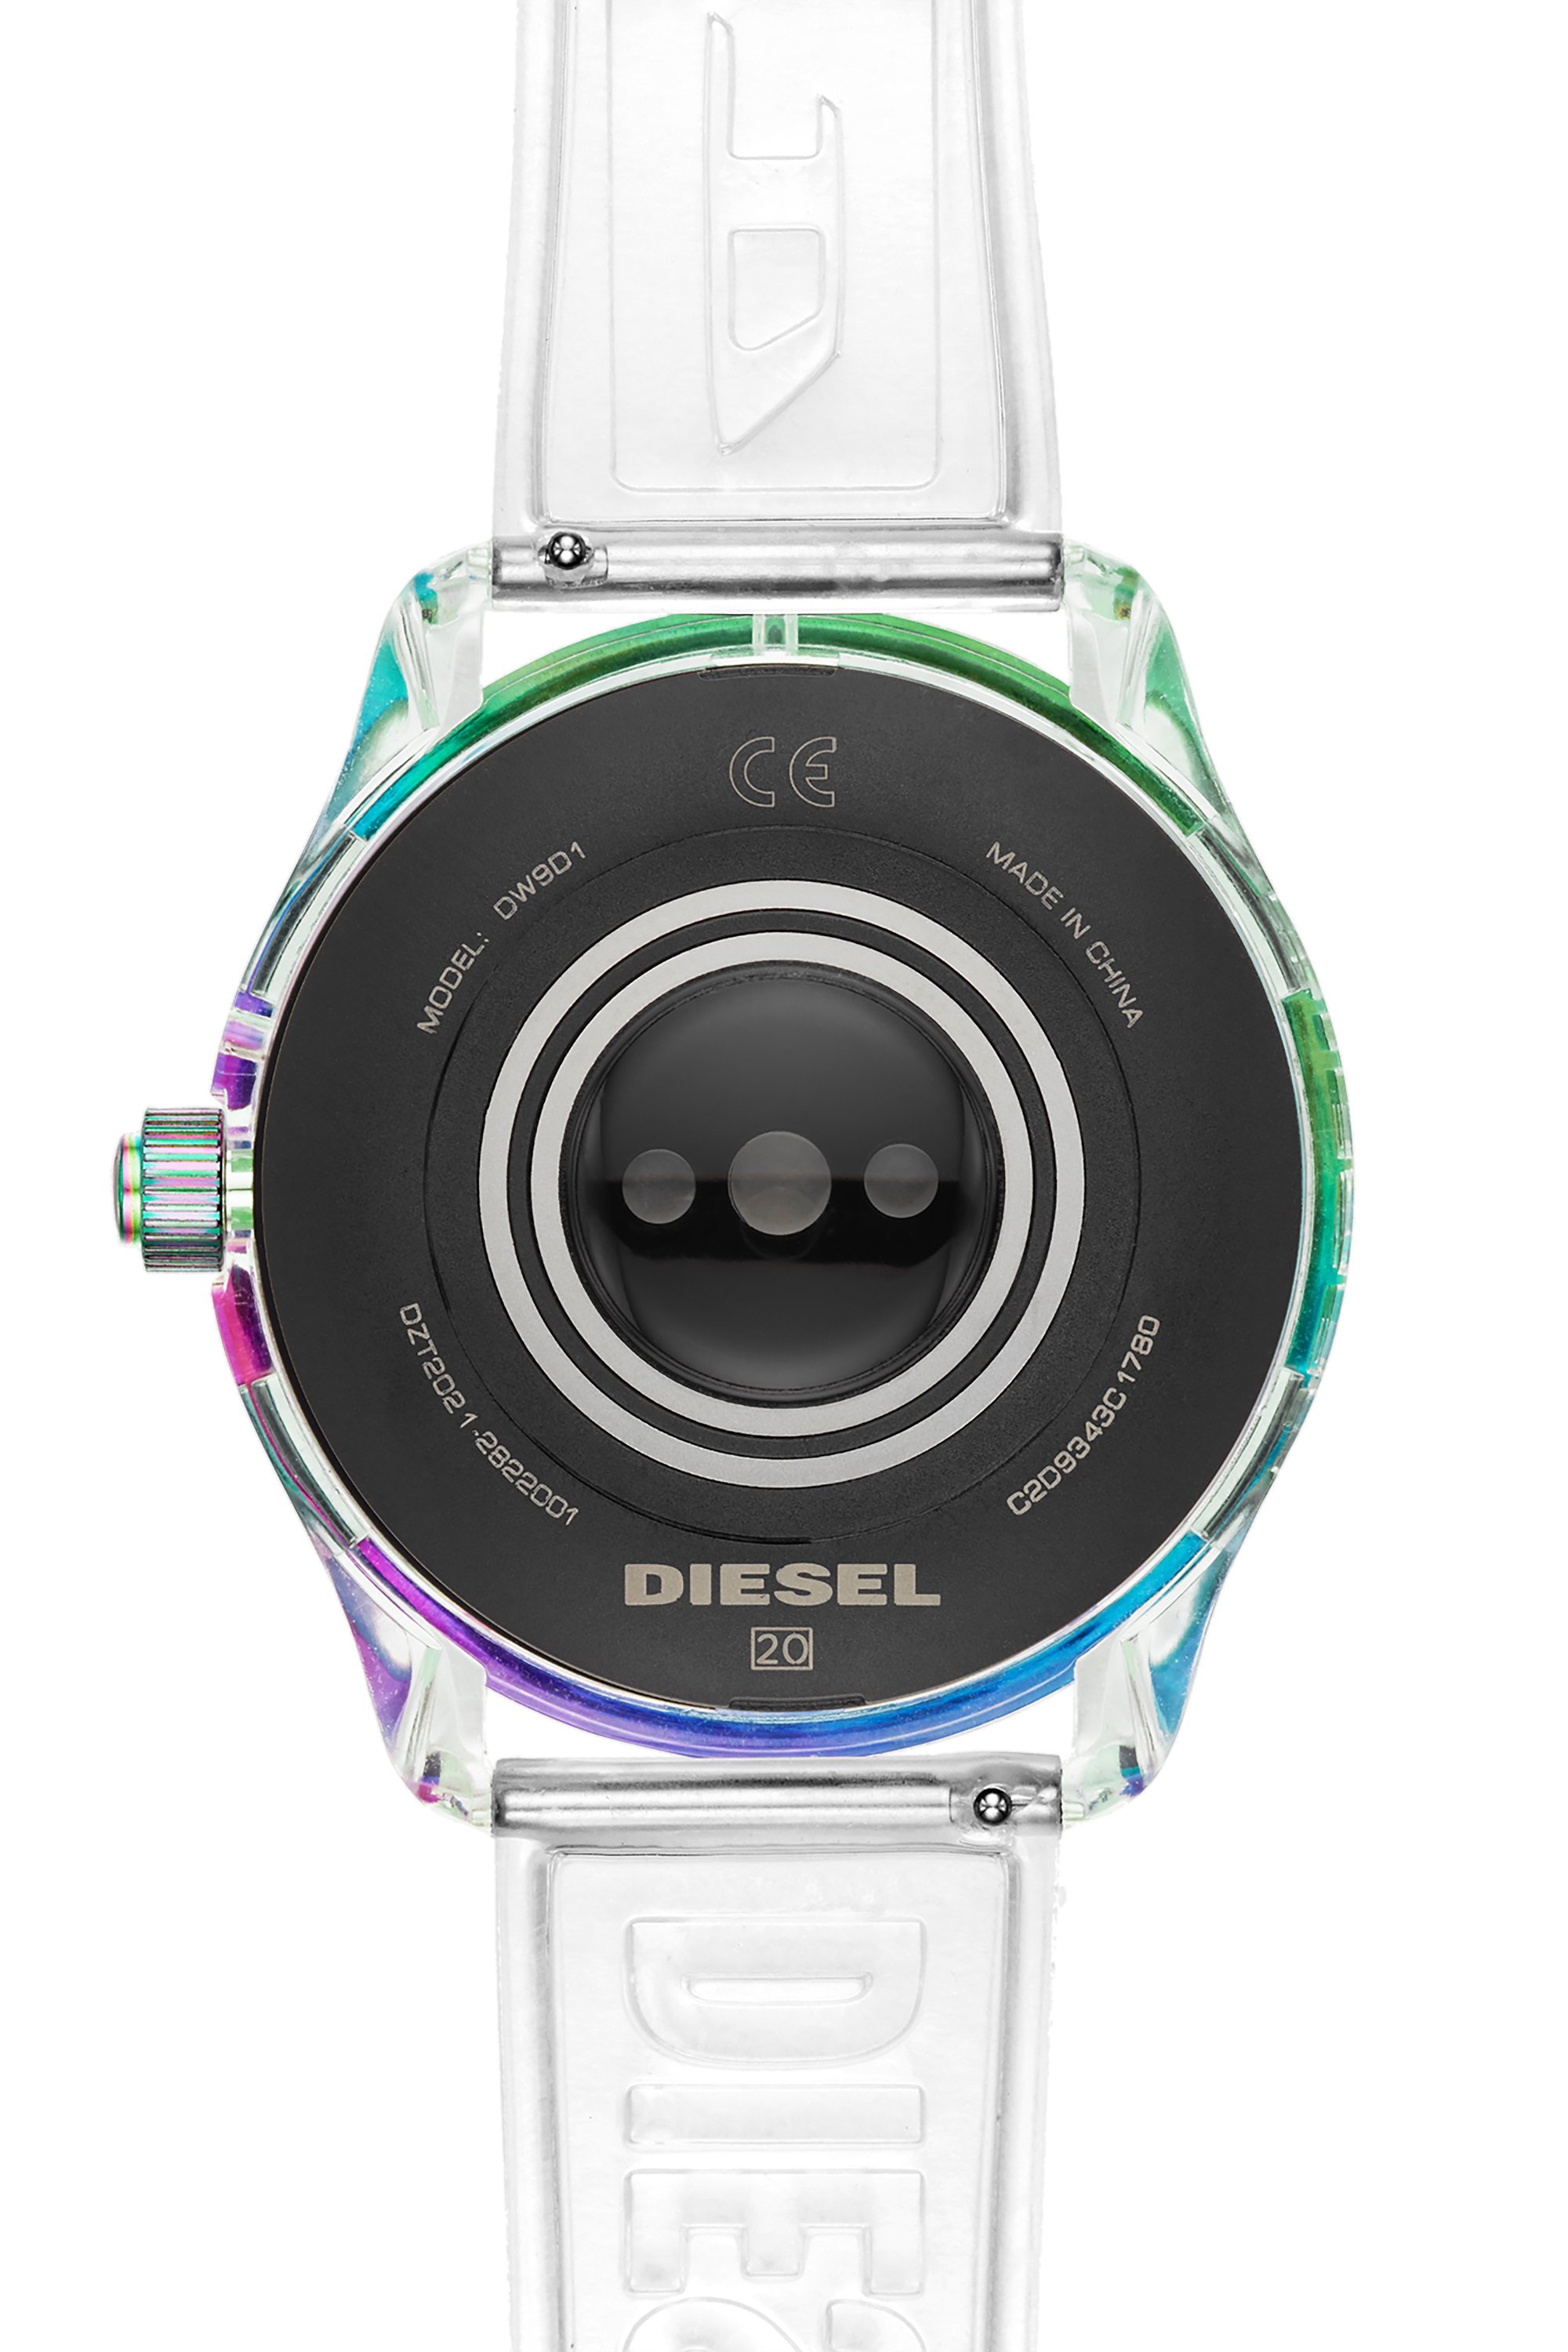 Diesel - DT2021, Weiß - Image 4